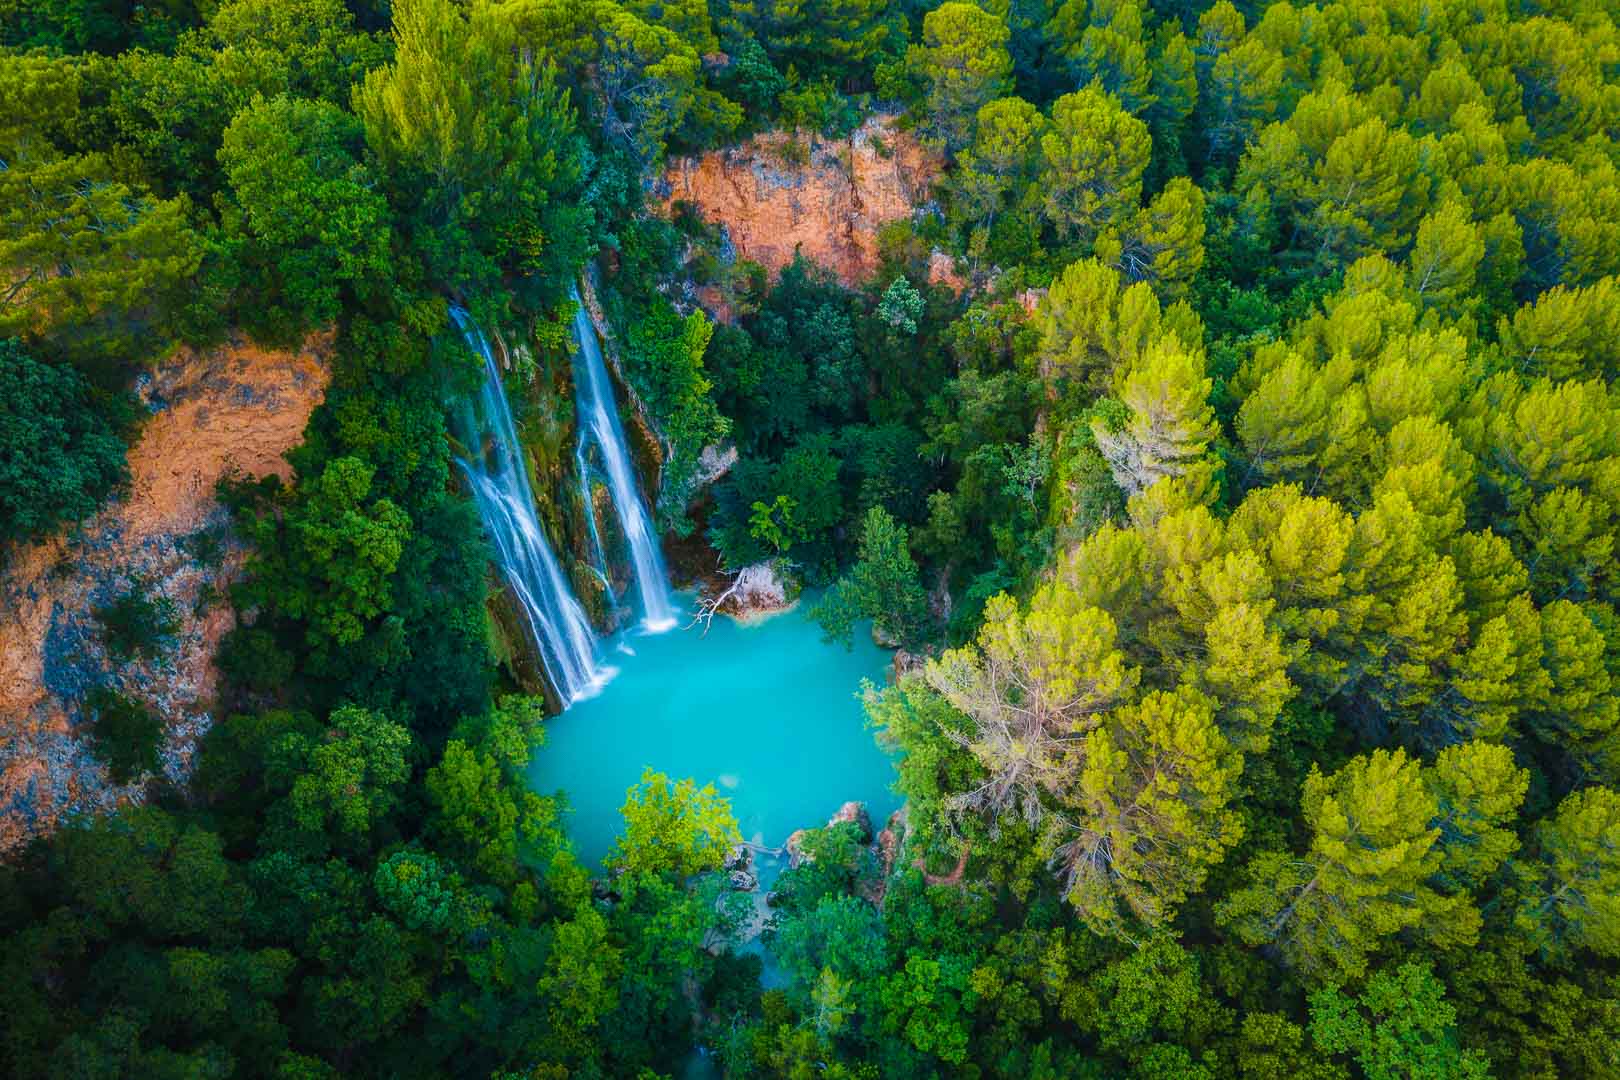 Sillans la Cascade – Amazing waterfall in Var, France